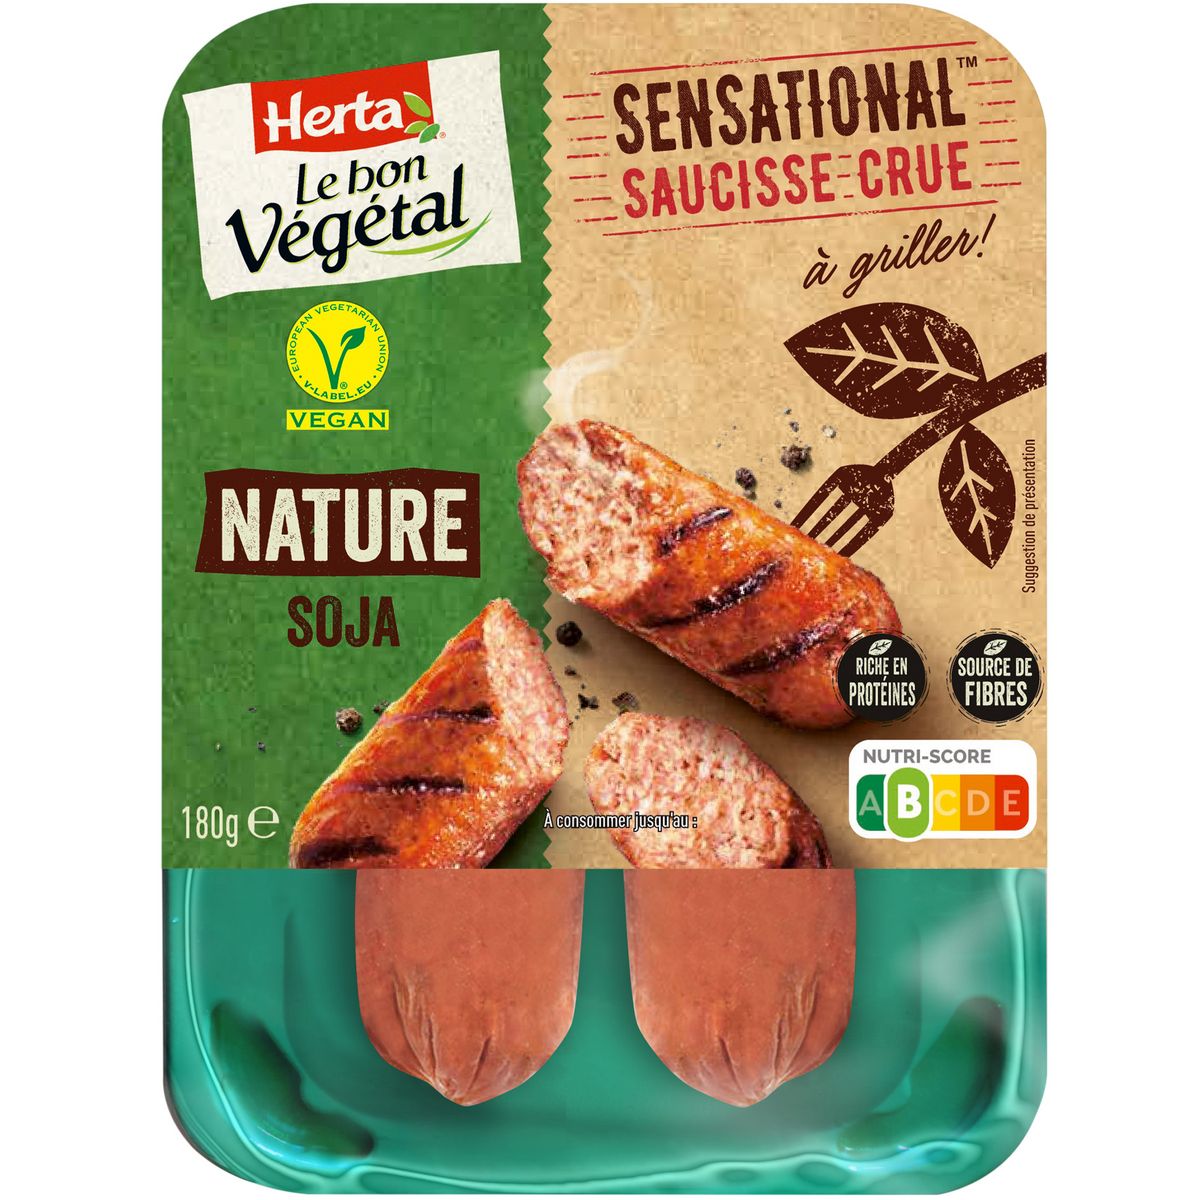 HERTA Le bon végétal saucisses crues nature 2 saucisses 180g